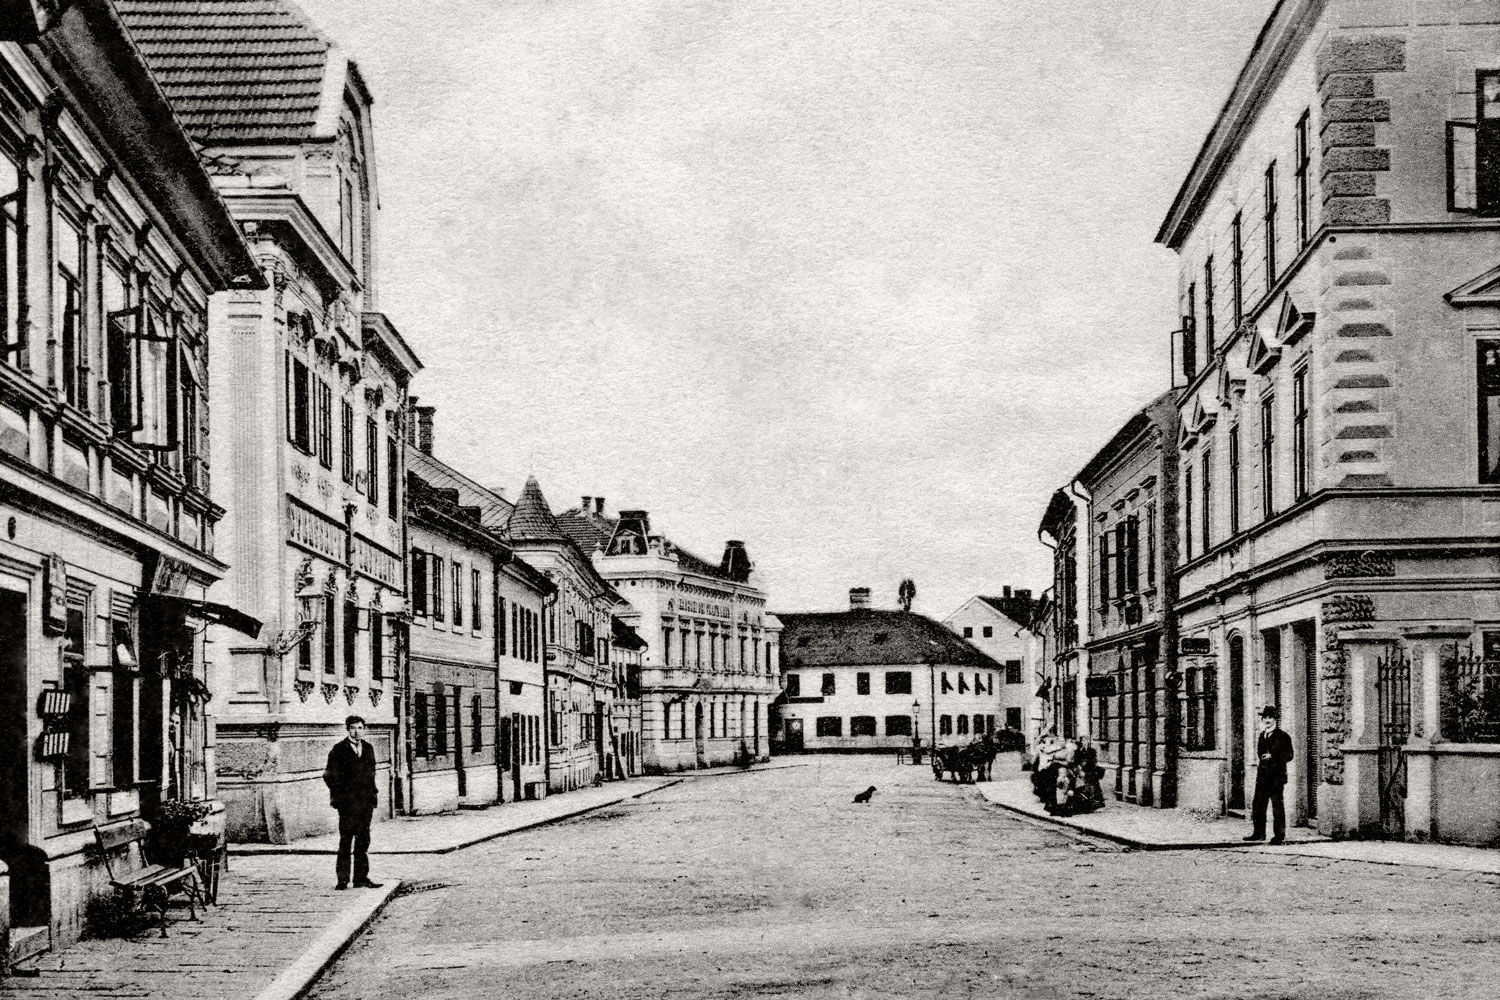 Via Roßmarkt, in posizione molto centrale, ai tempi di Franz Pöttinger, che vi acquistò la casa al n° 25.